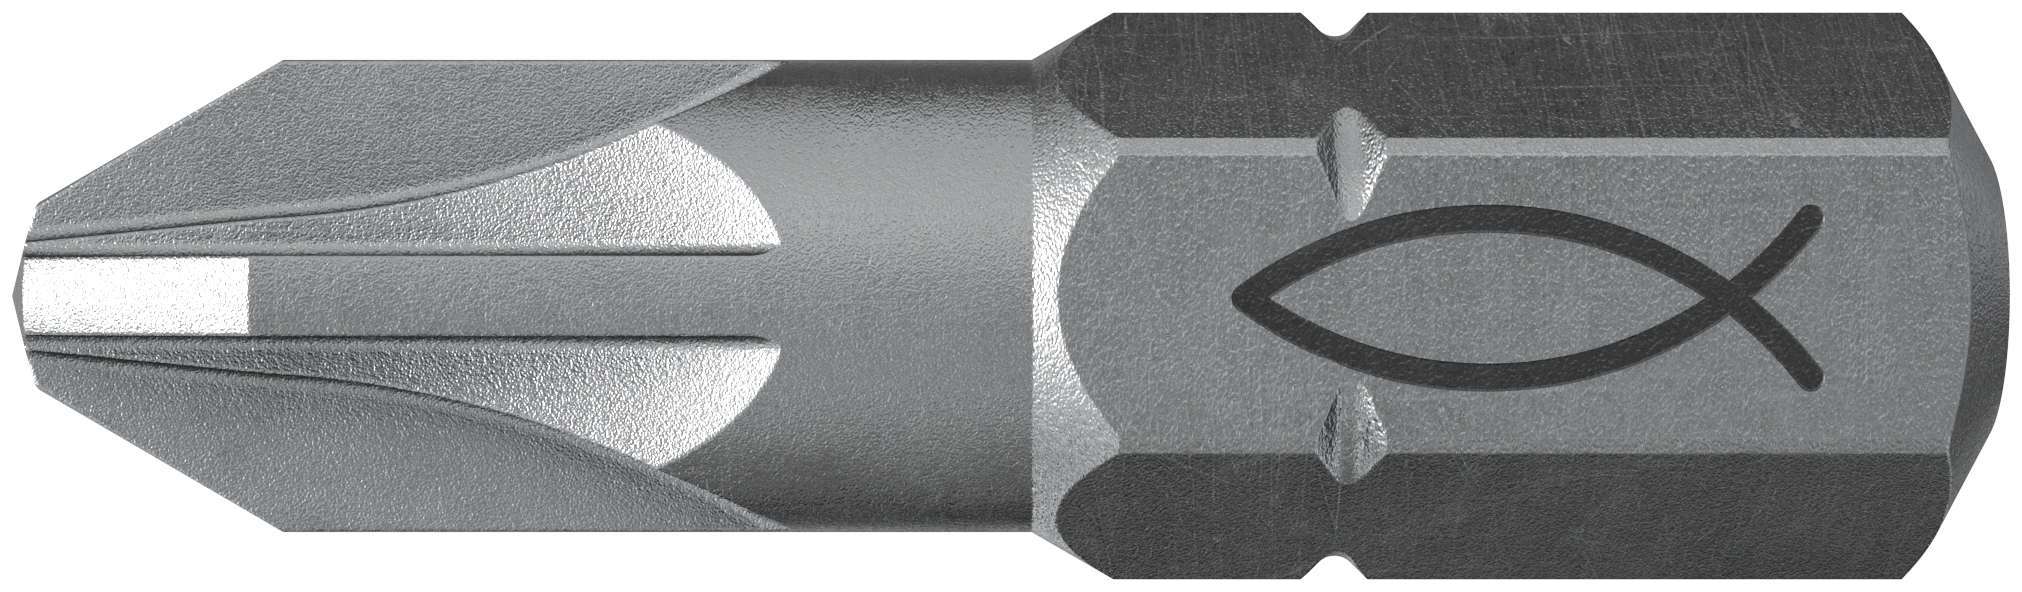 fischer Inserto per avvitatore FPB PZ 3 PROFI Bit W 10 (10 Pz.) L'inserto per trapano e avvitatore, in acciaio di alta qualit con elevata resistenza all?abrasione per uso professionale.